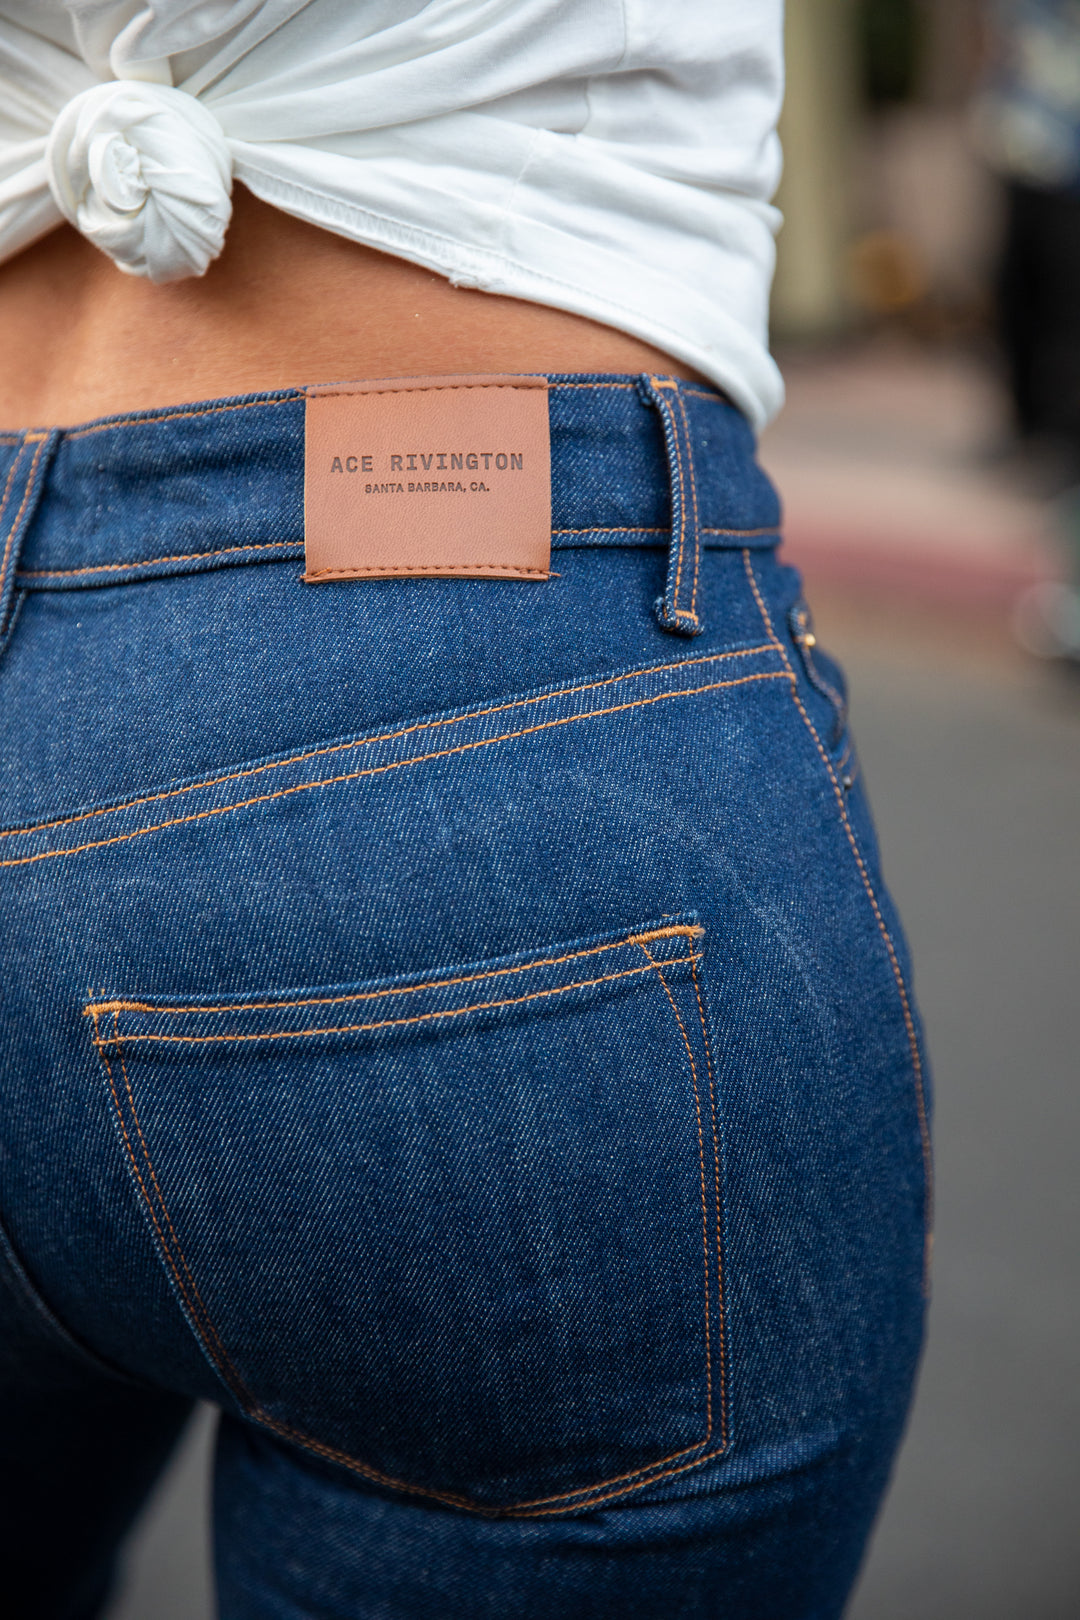 Women's Classic Straight Comfort Denim Jeans - Dark Rinse